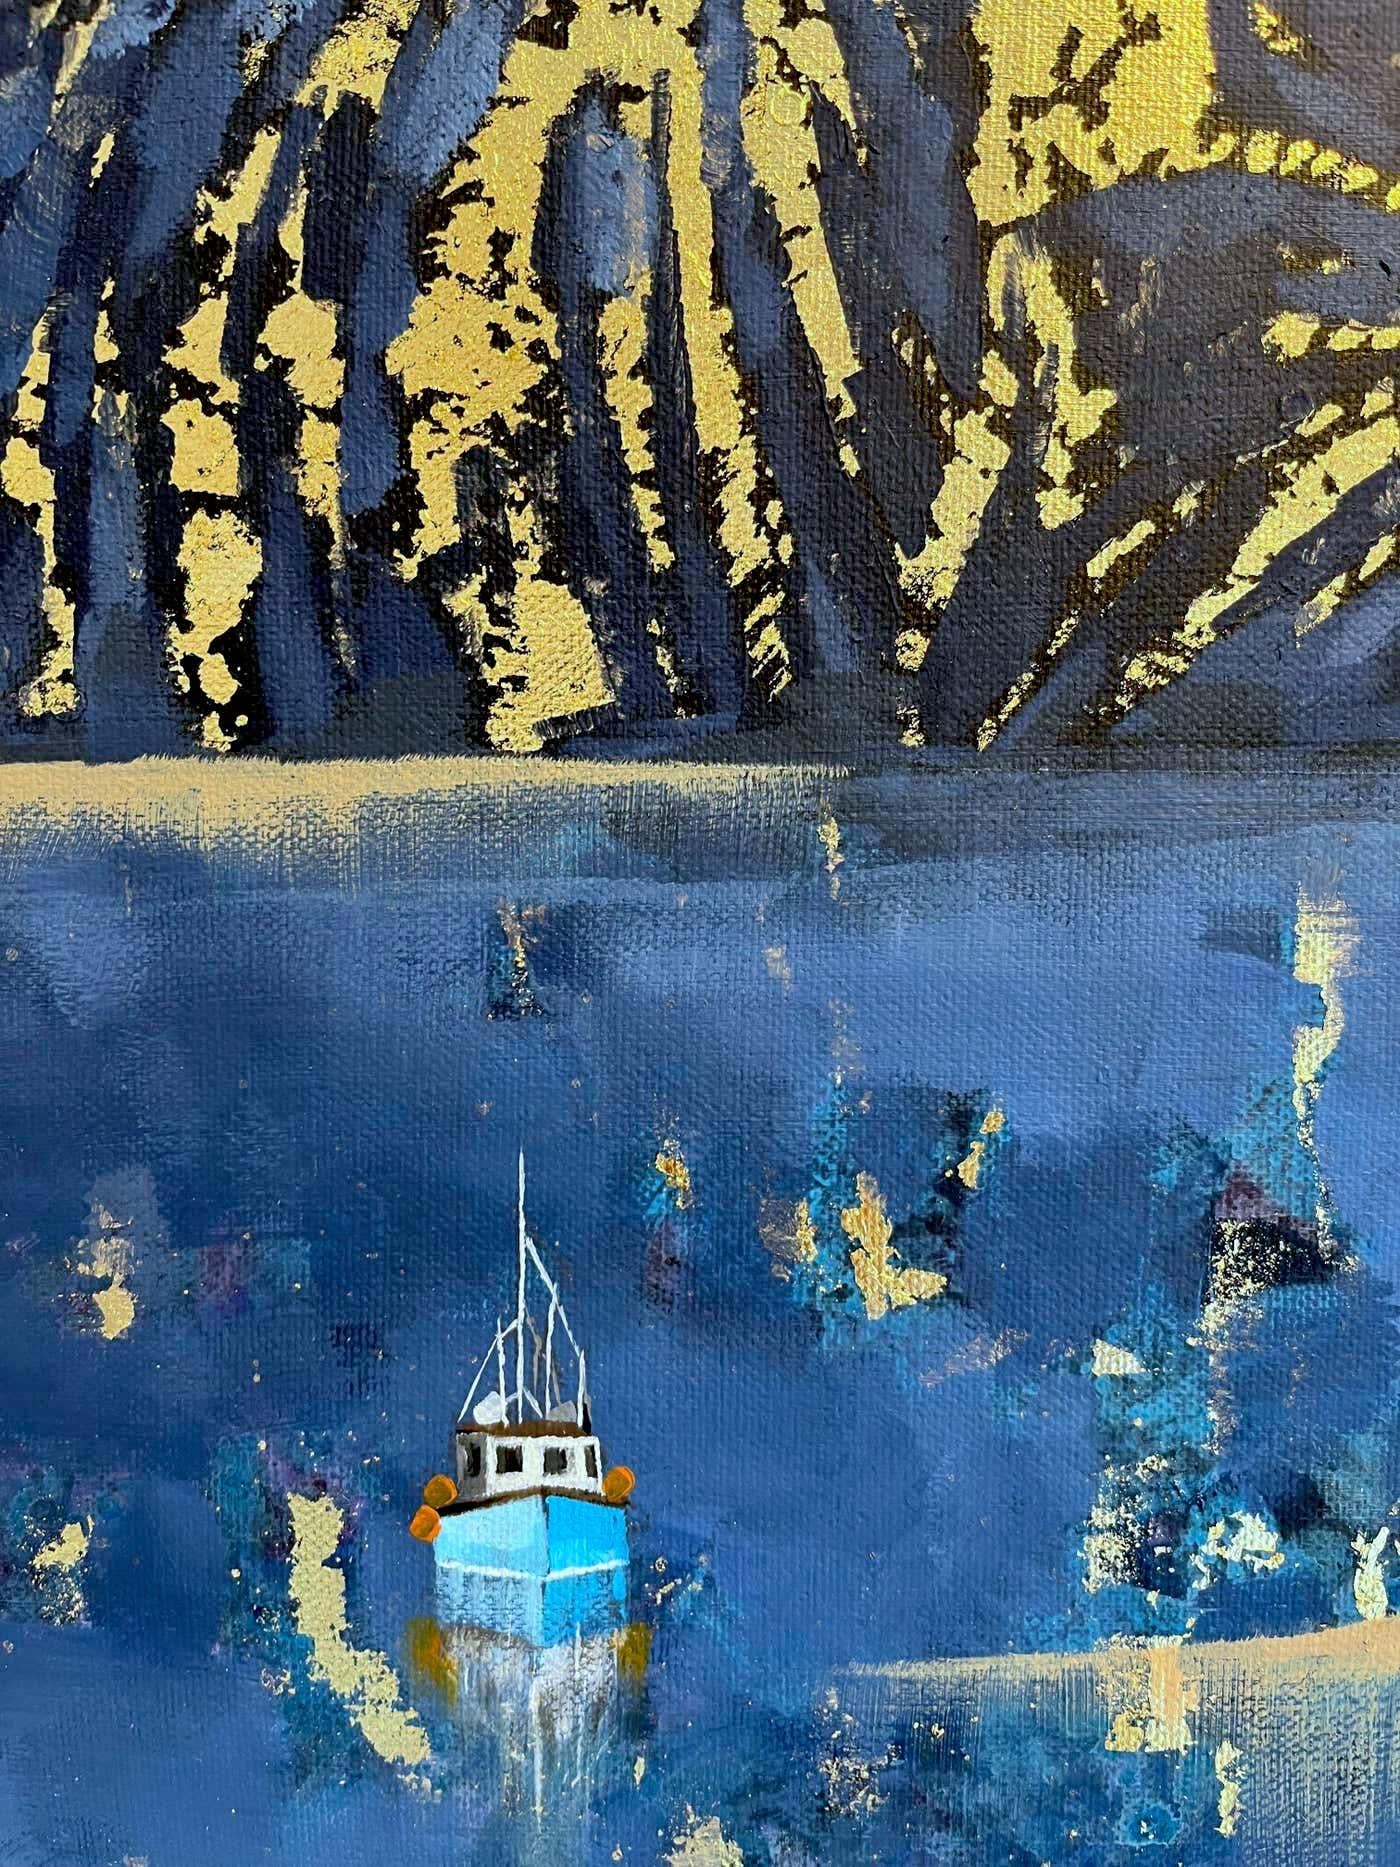 Winter-Feuerwerk-ORIGINAL IMPRESSIONISMUS Seelandschaft Ölgemälde-Zeitgenössische Kunst (Silber), Landscape Painting, von Lenny Cornforth